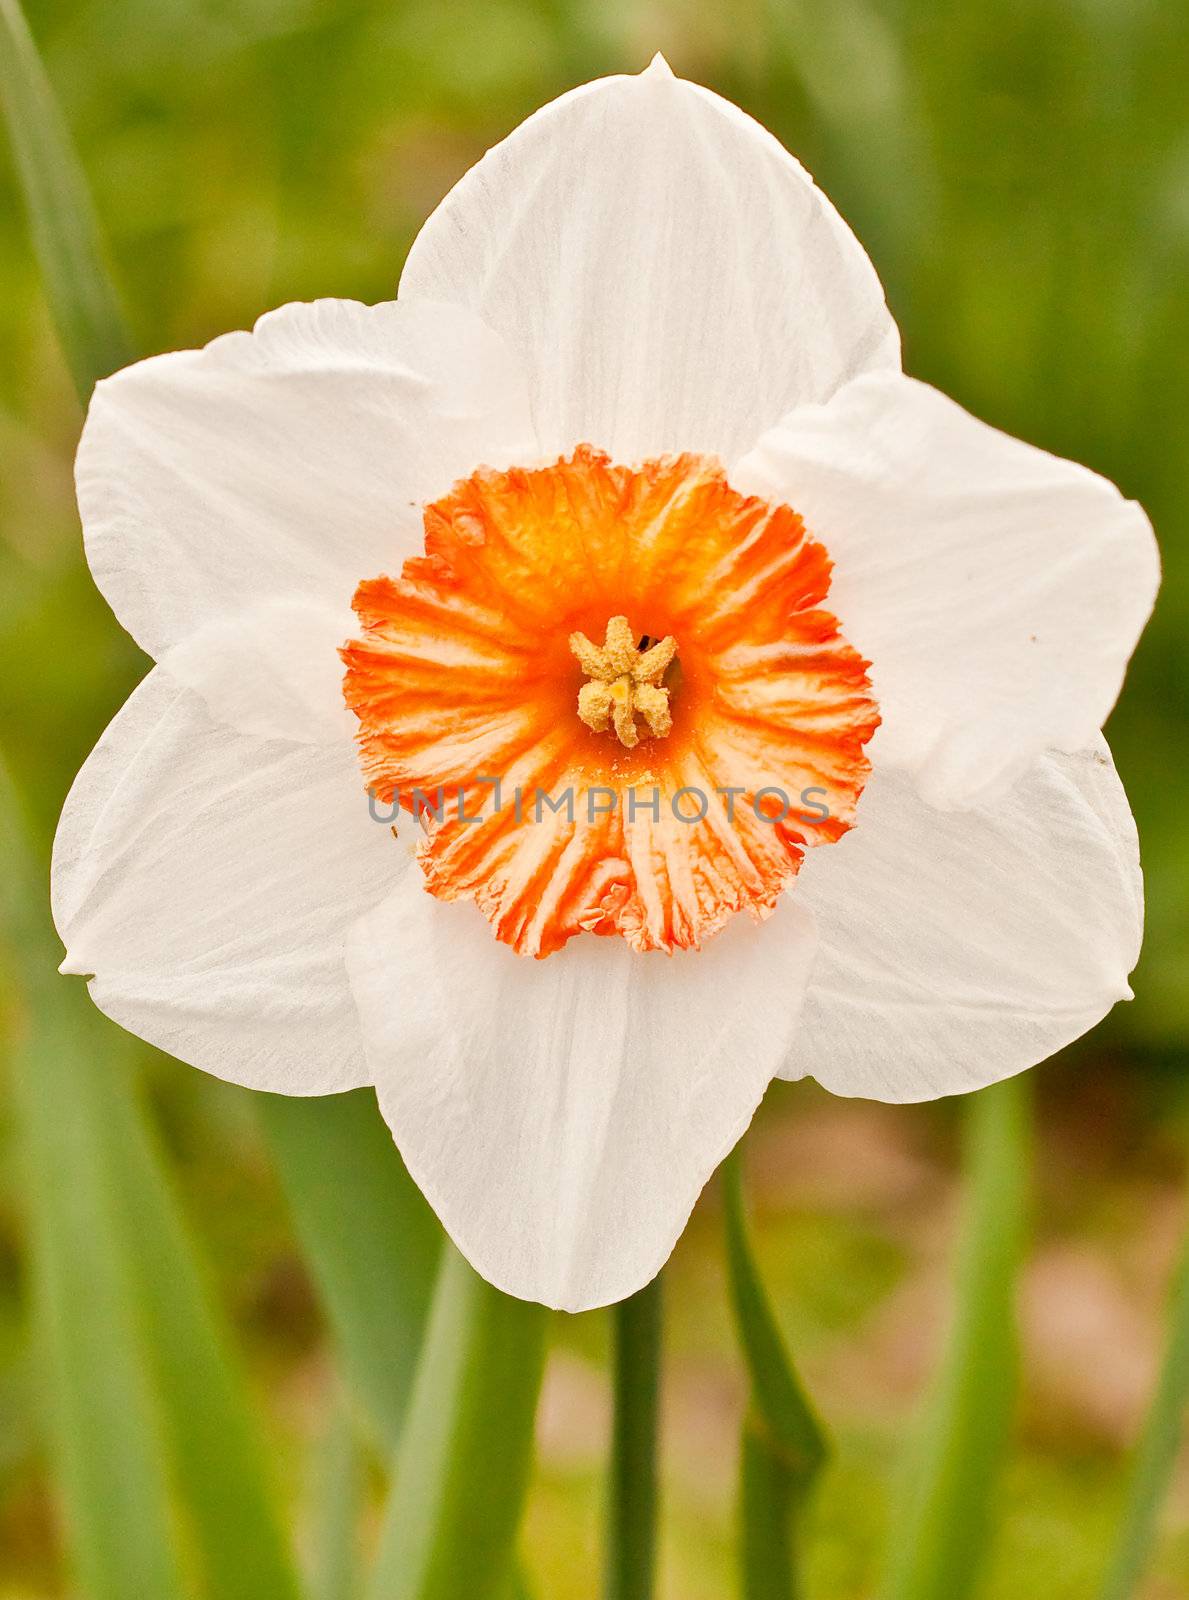 daffodil by trgowanlock